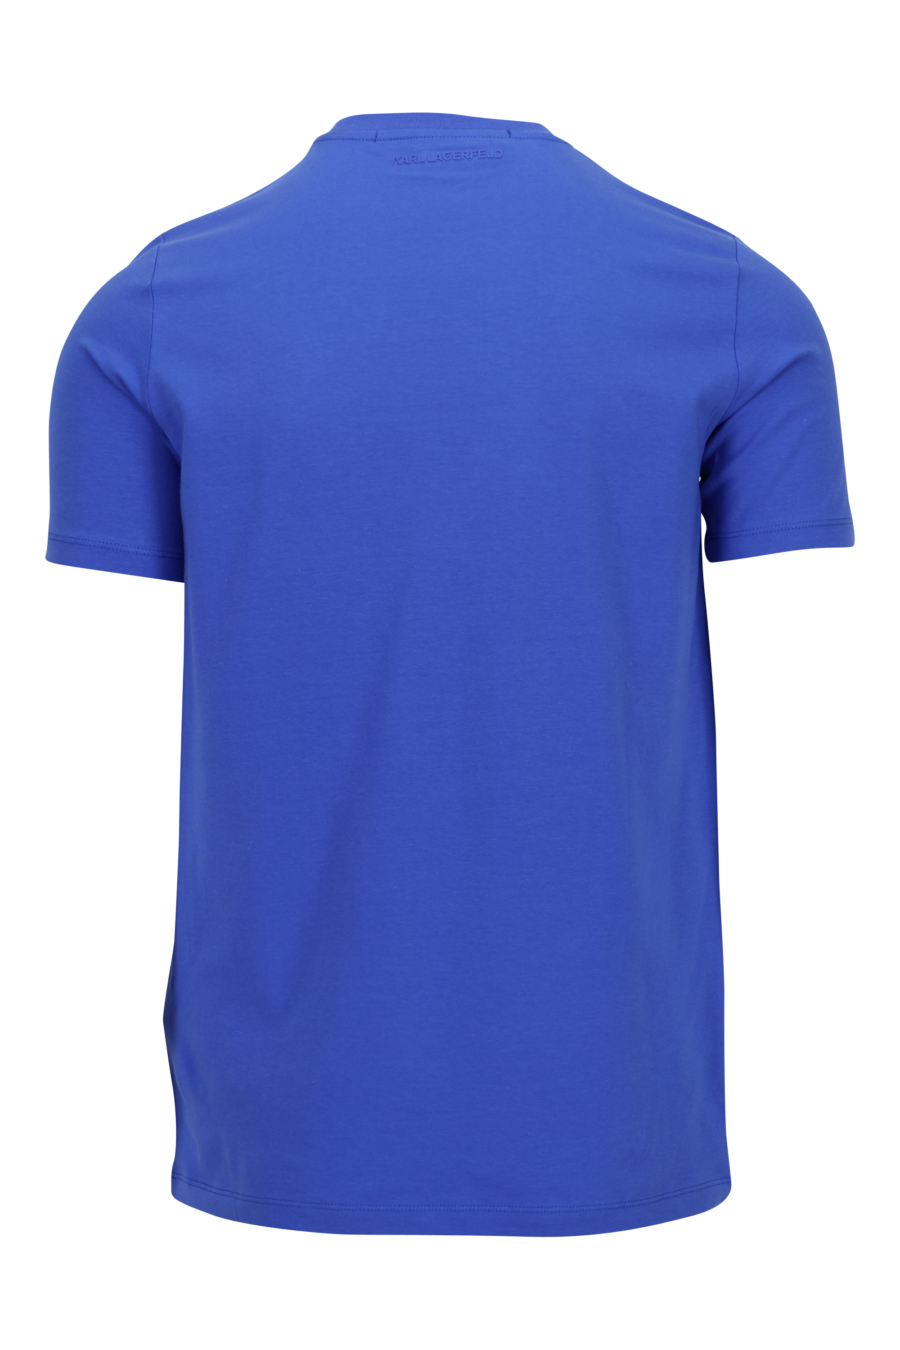 Camiseta azul eléctrico con minilogo "karl" en goma - 4062226972949 1